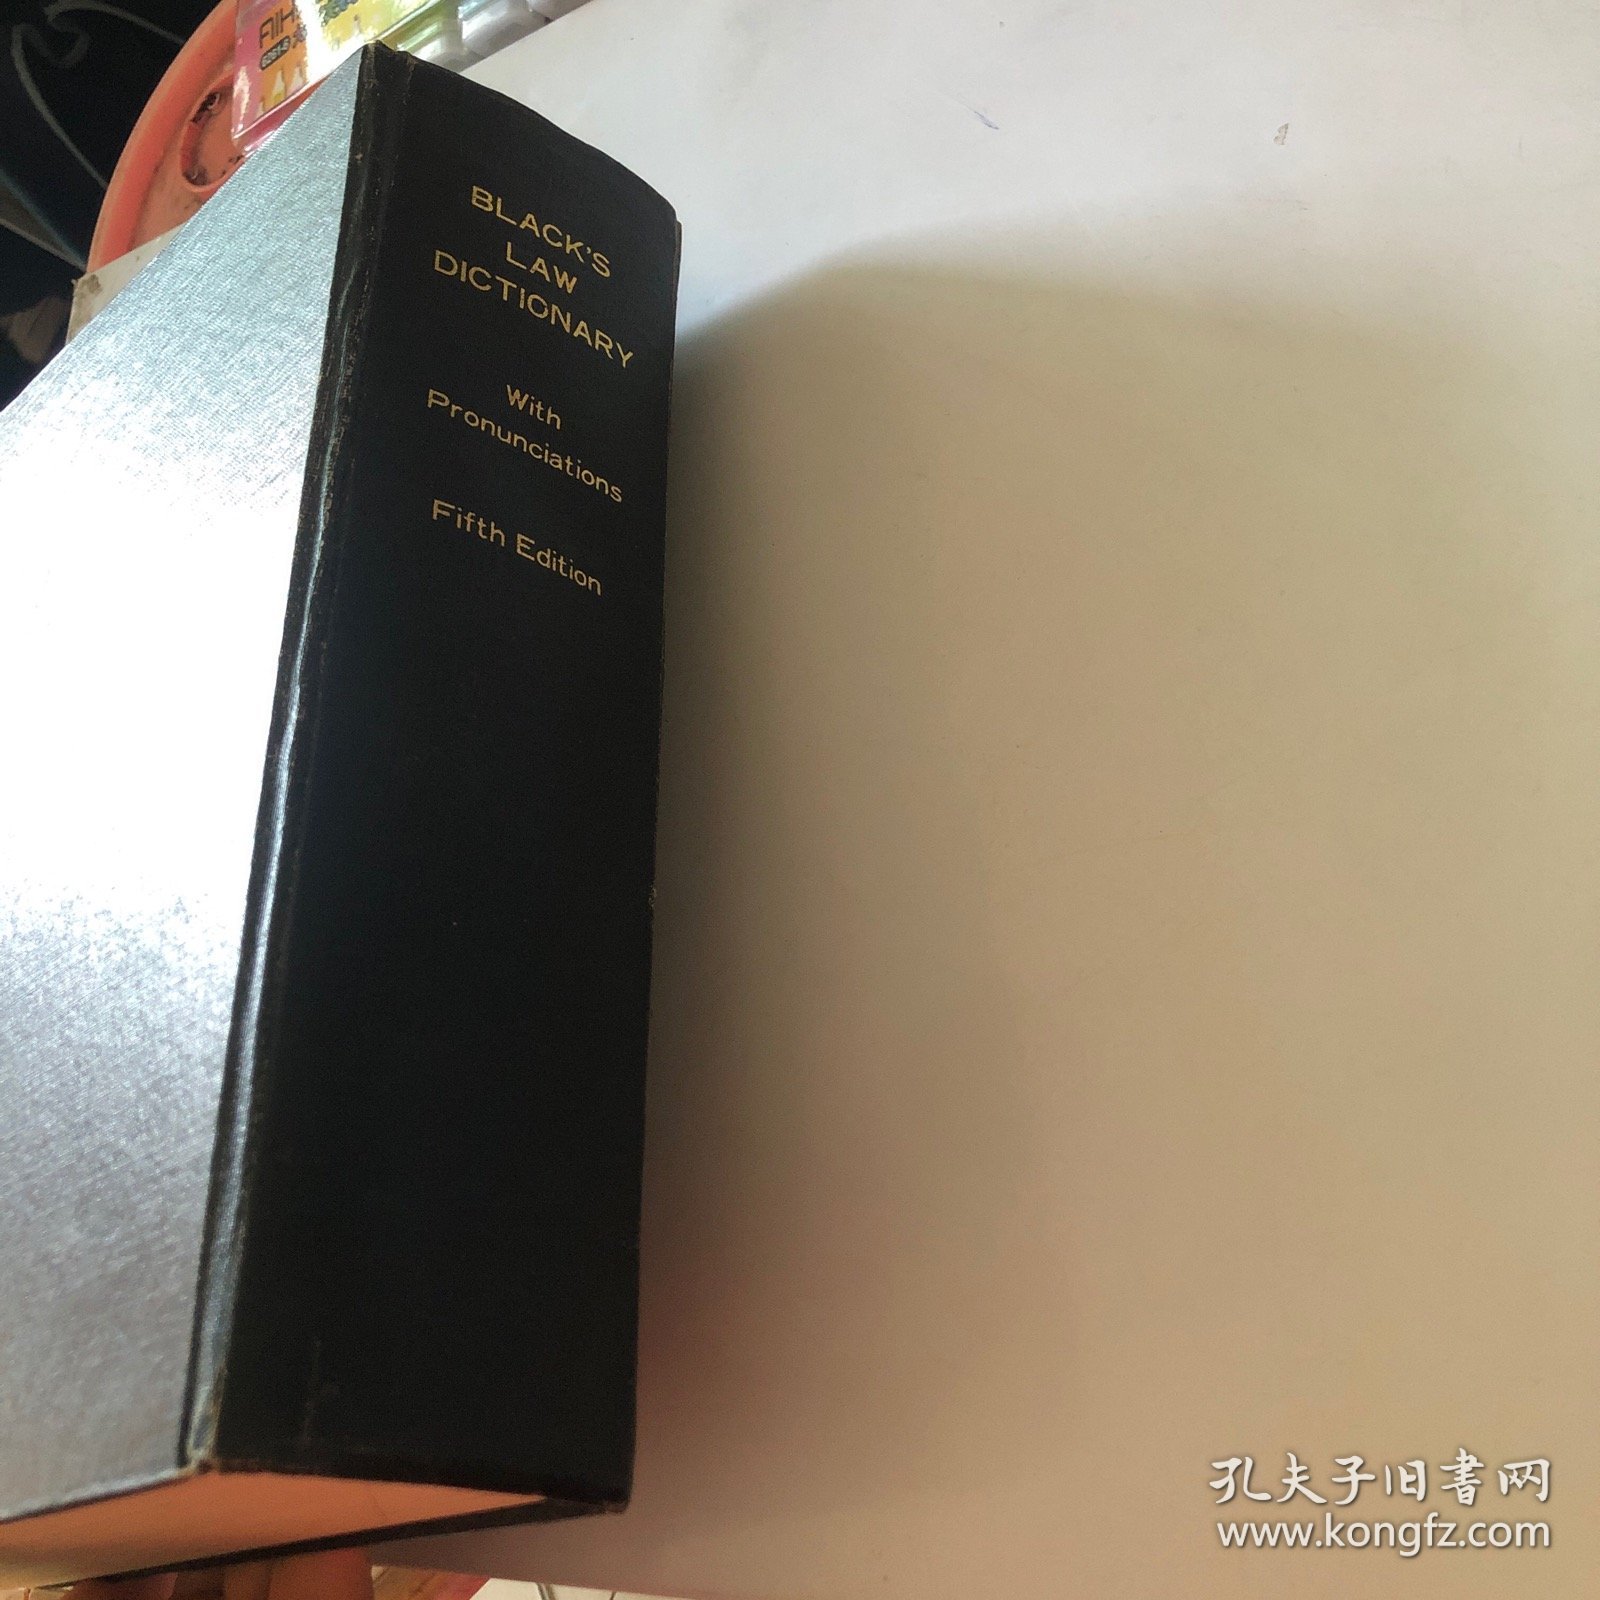 布莱克法律辞典 BLACK'S LAW DICTIONARY With Pronunciations Fifth Edition